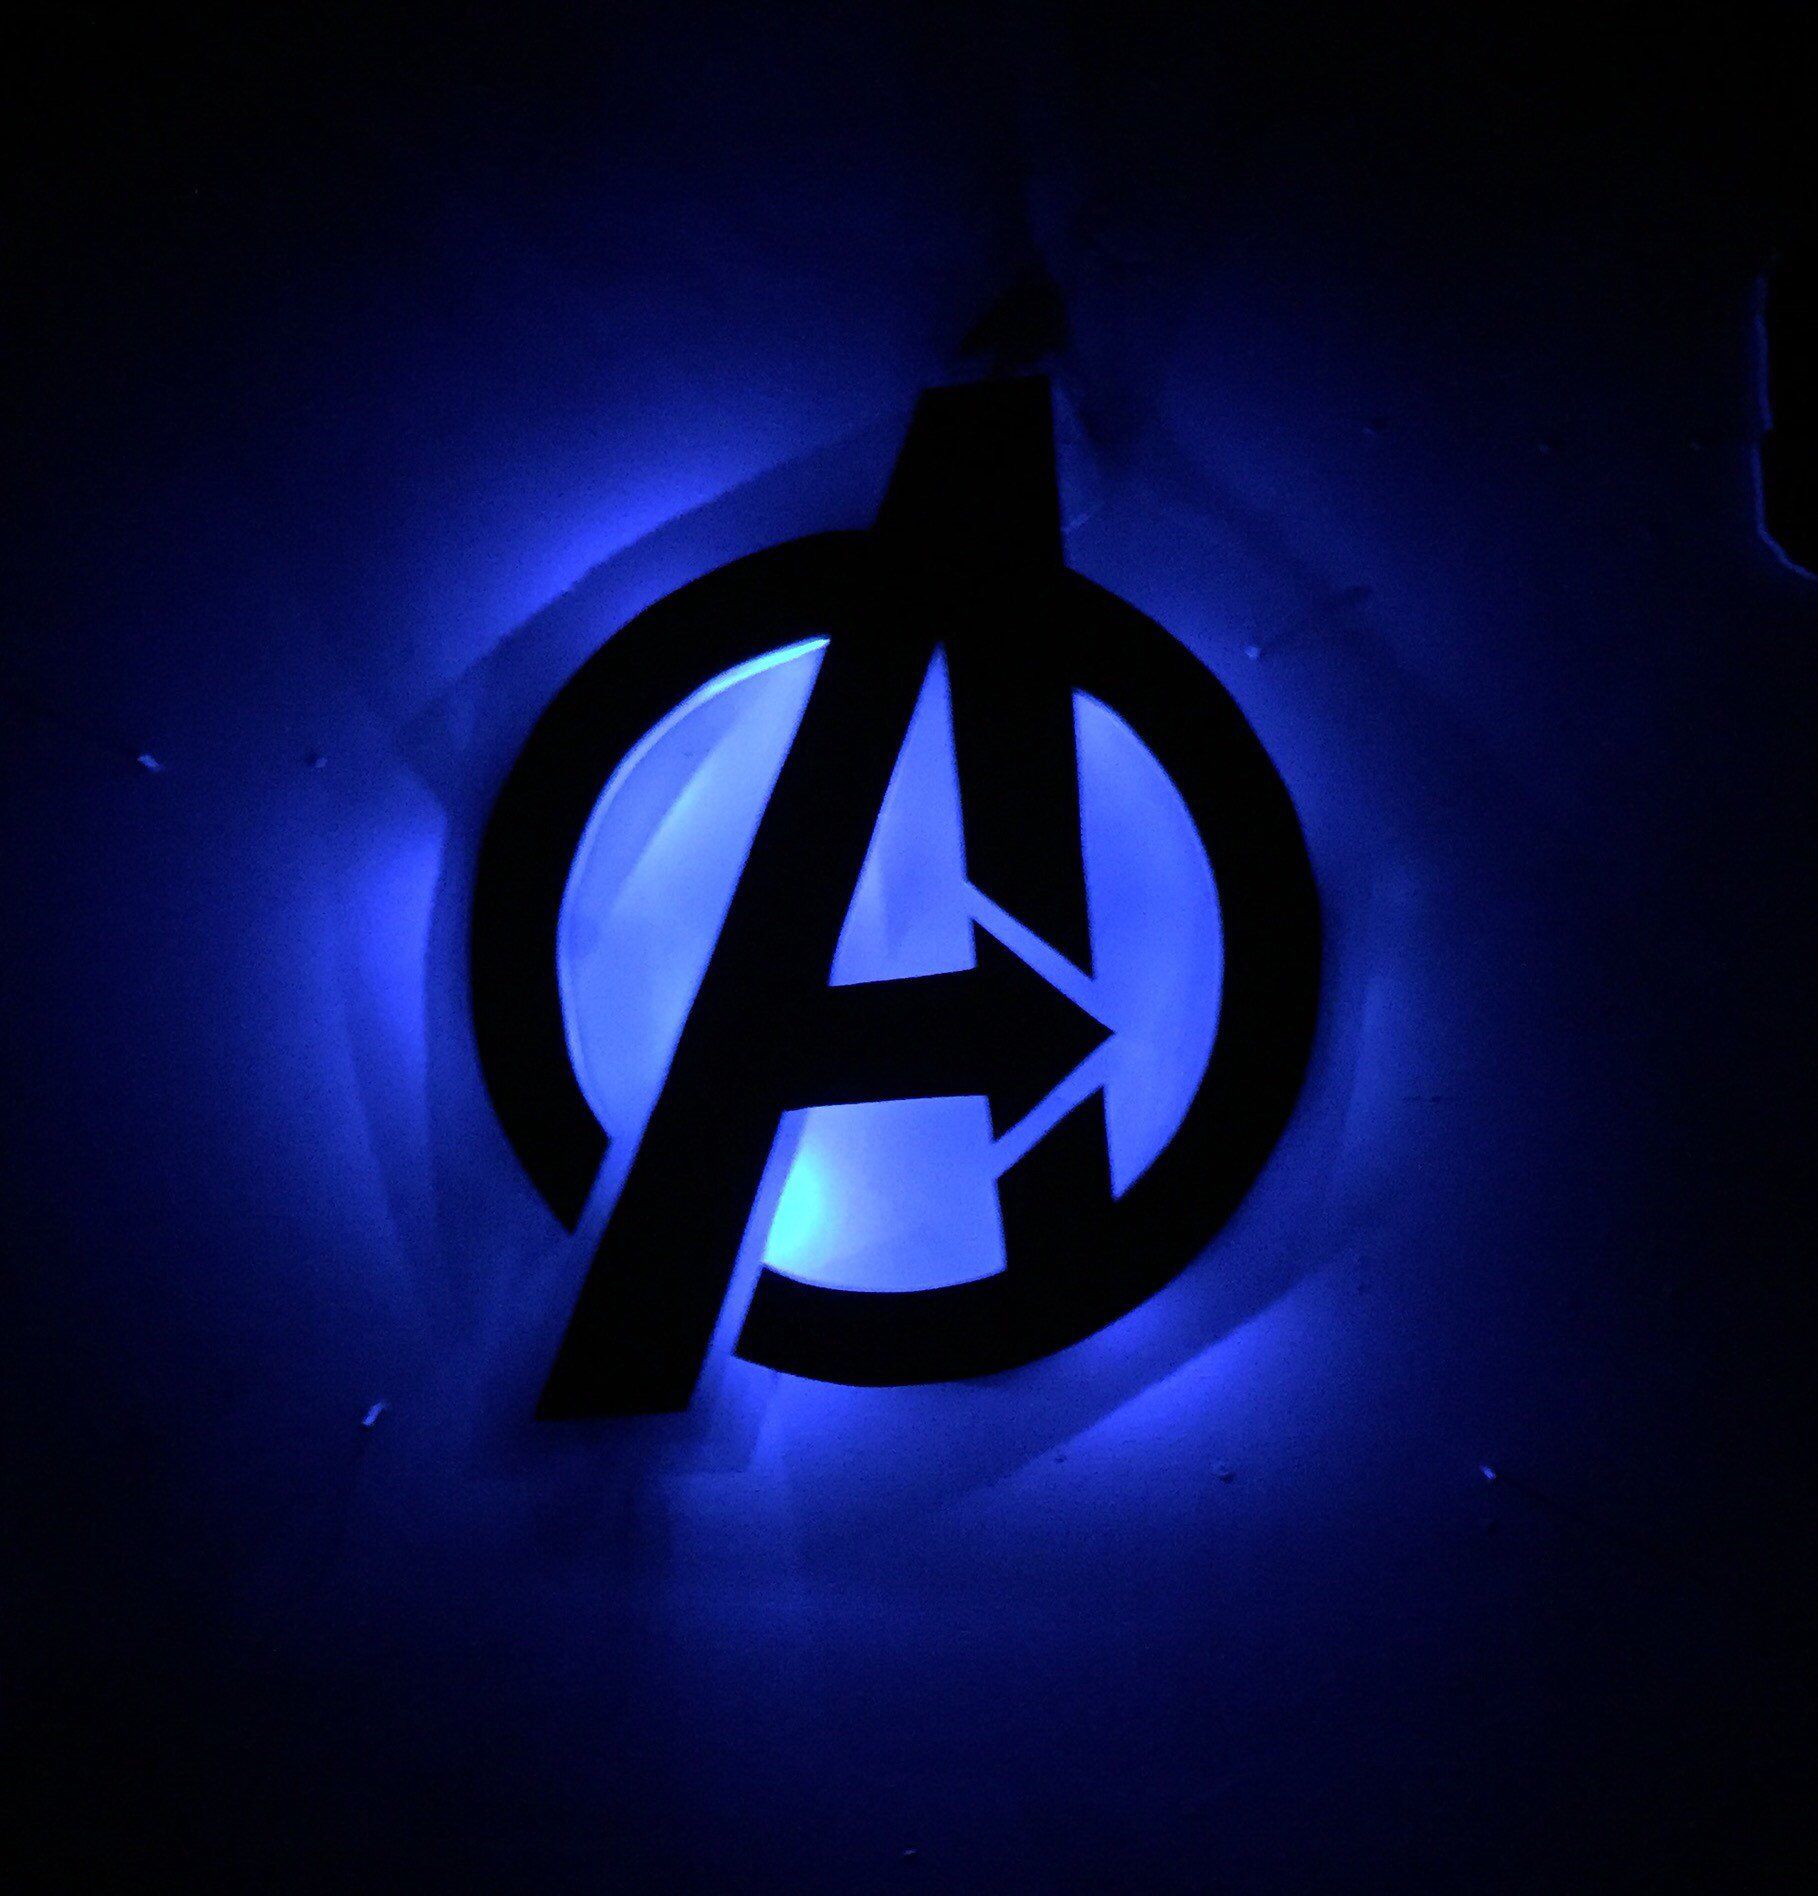 Avengers Illuminated Symbol Sign By NameAboveNames On Etsy Listing 538072248 Avengers. Avengers Wallpaper, Avengers Symbols, Avengers Fan Art